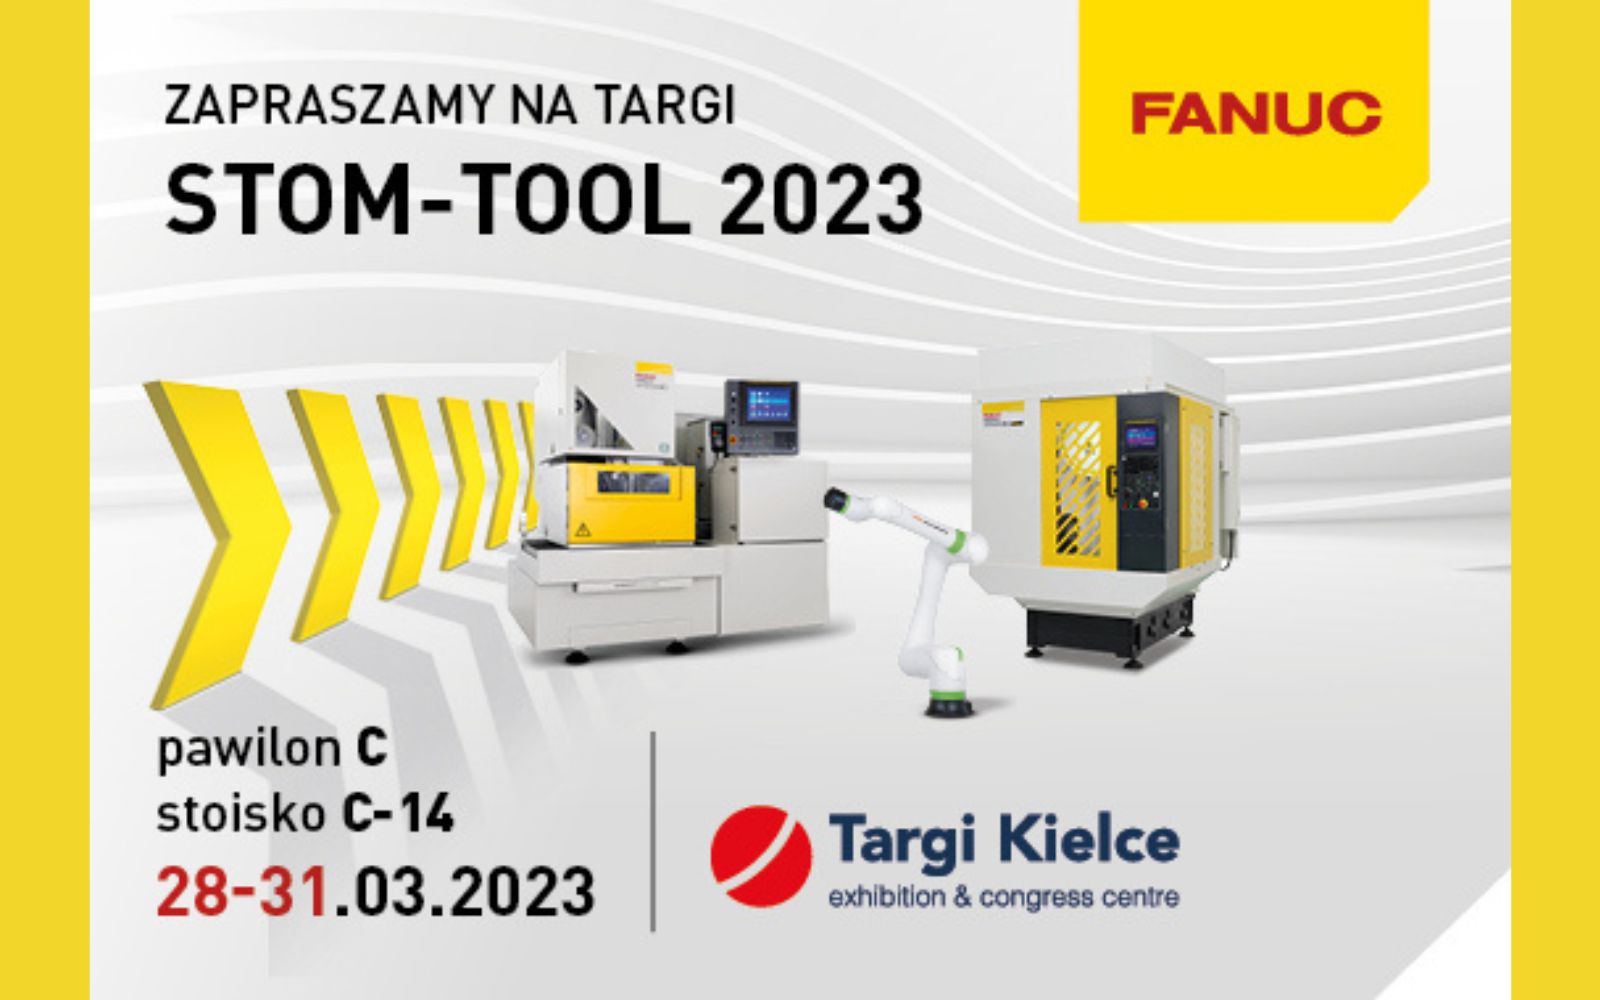 Firma FANUC Polska zaprasza na XVI edycję Targów STOM-TOOL